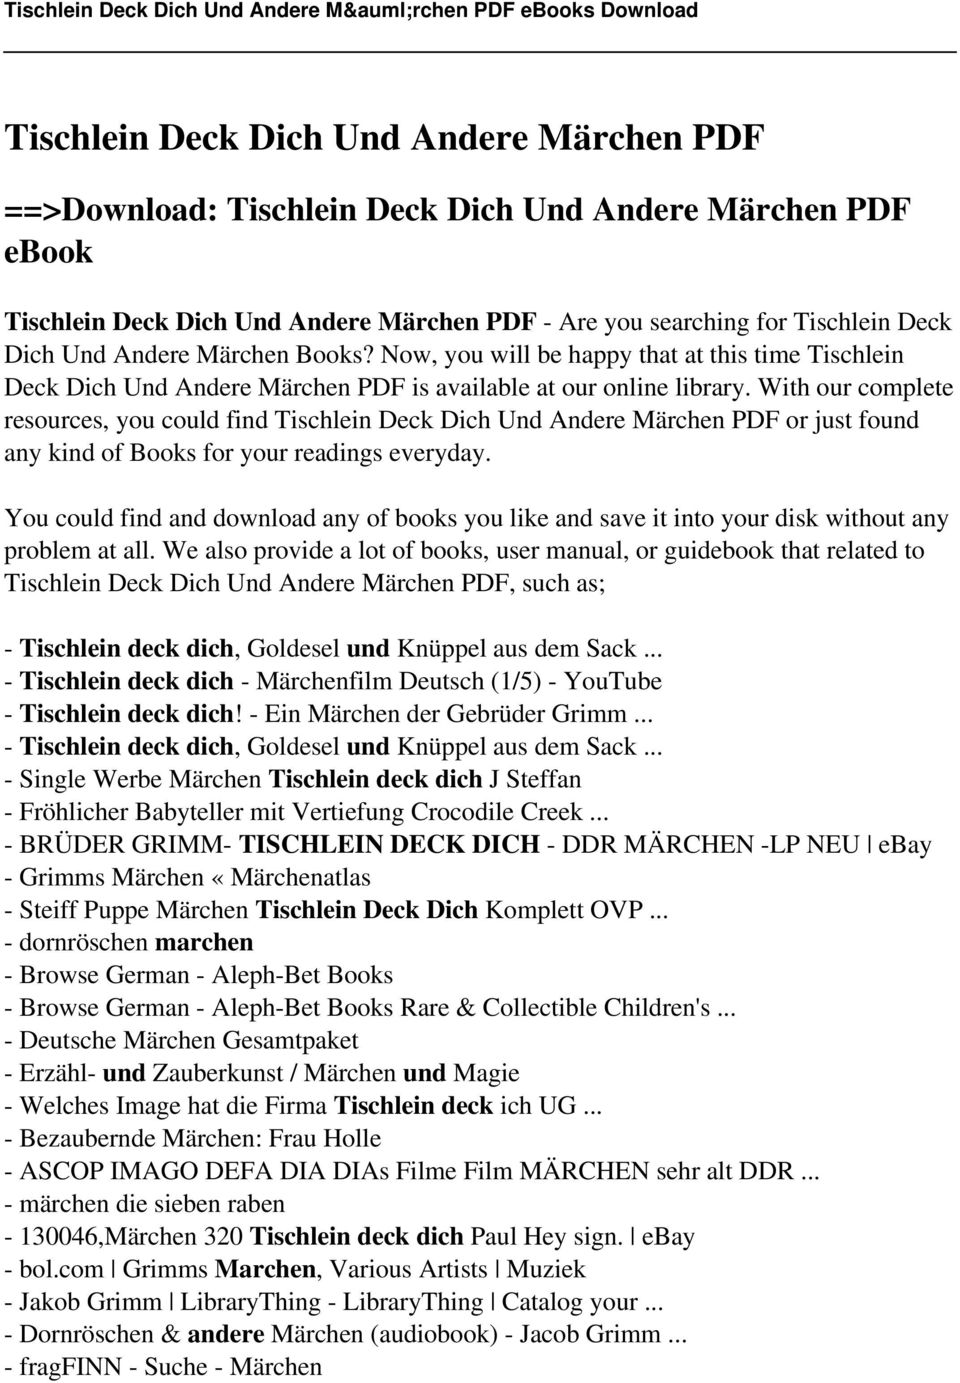 Tischlein Deck Dich Und Andere Marchen Pdf Pdf Kostenfreier Download